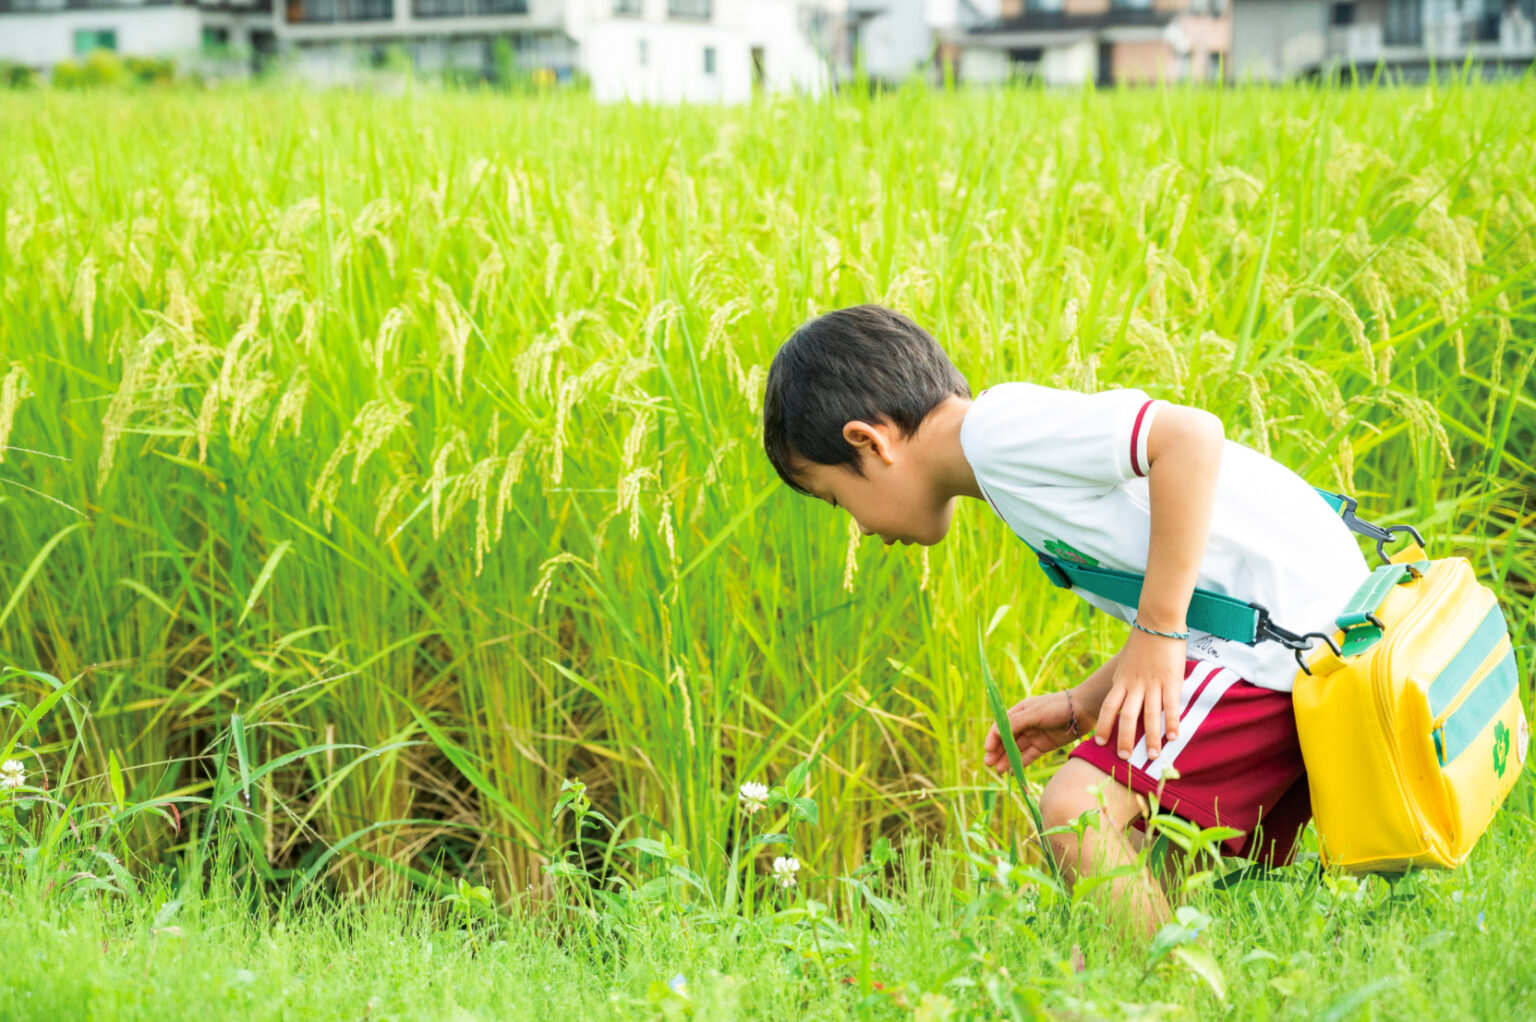 新潟県南魚沼市の認定こども園〈金城幼稚園・保育園〉での様子。